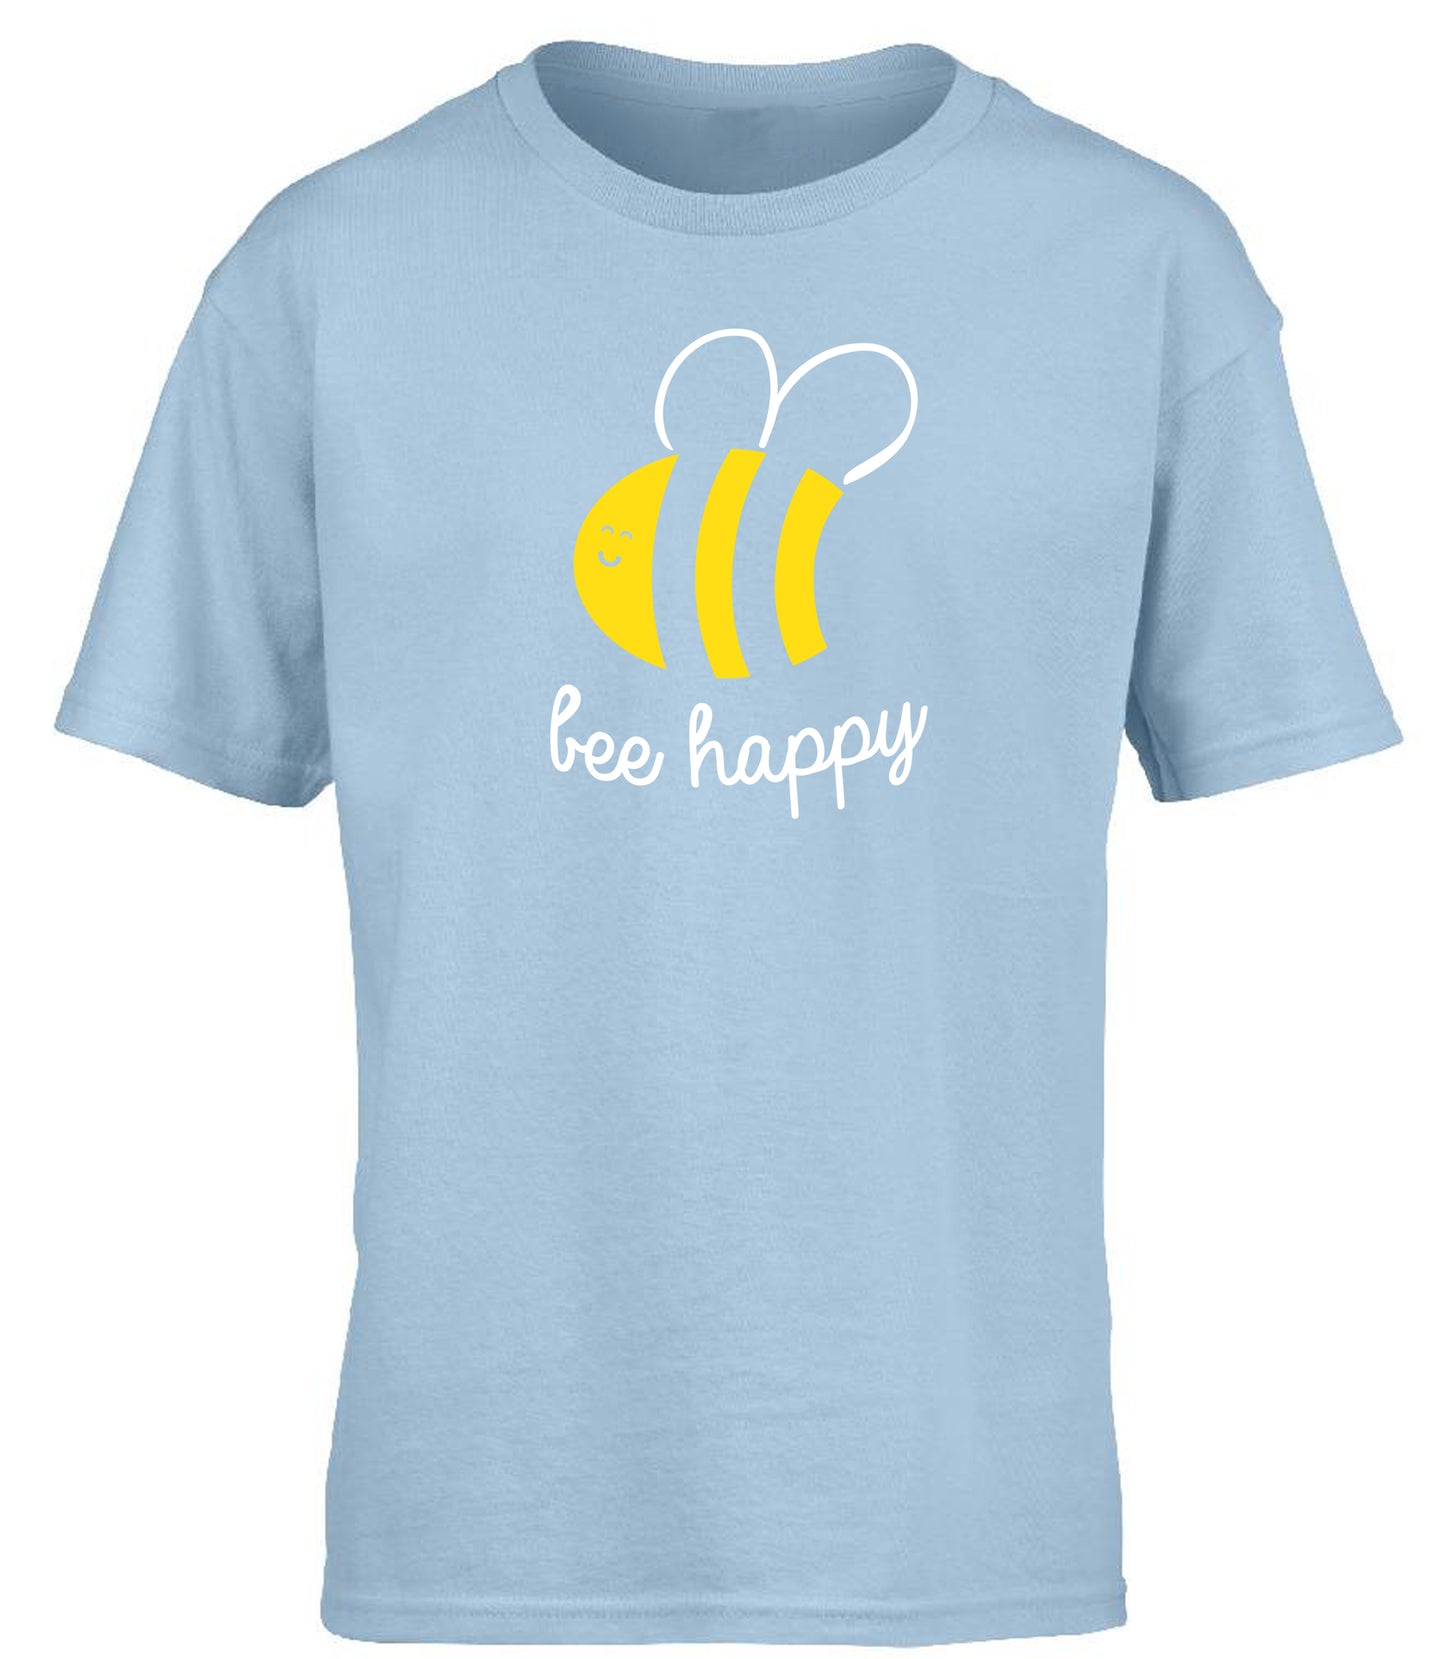 Bee Happy children's T-shirt